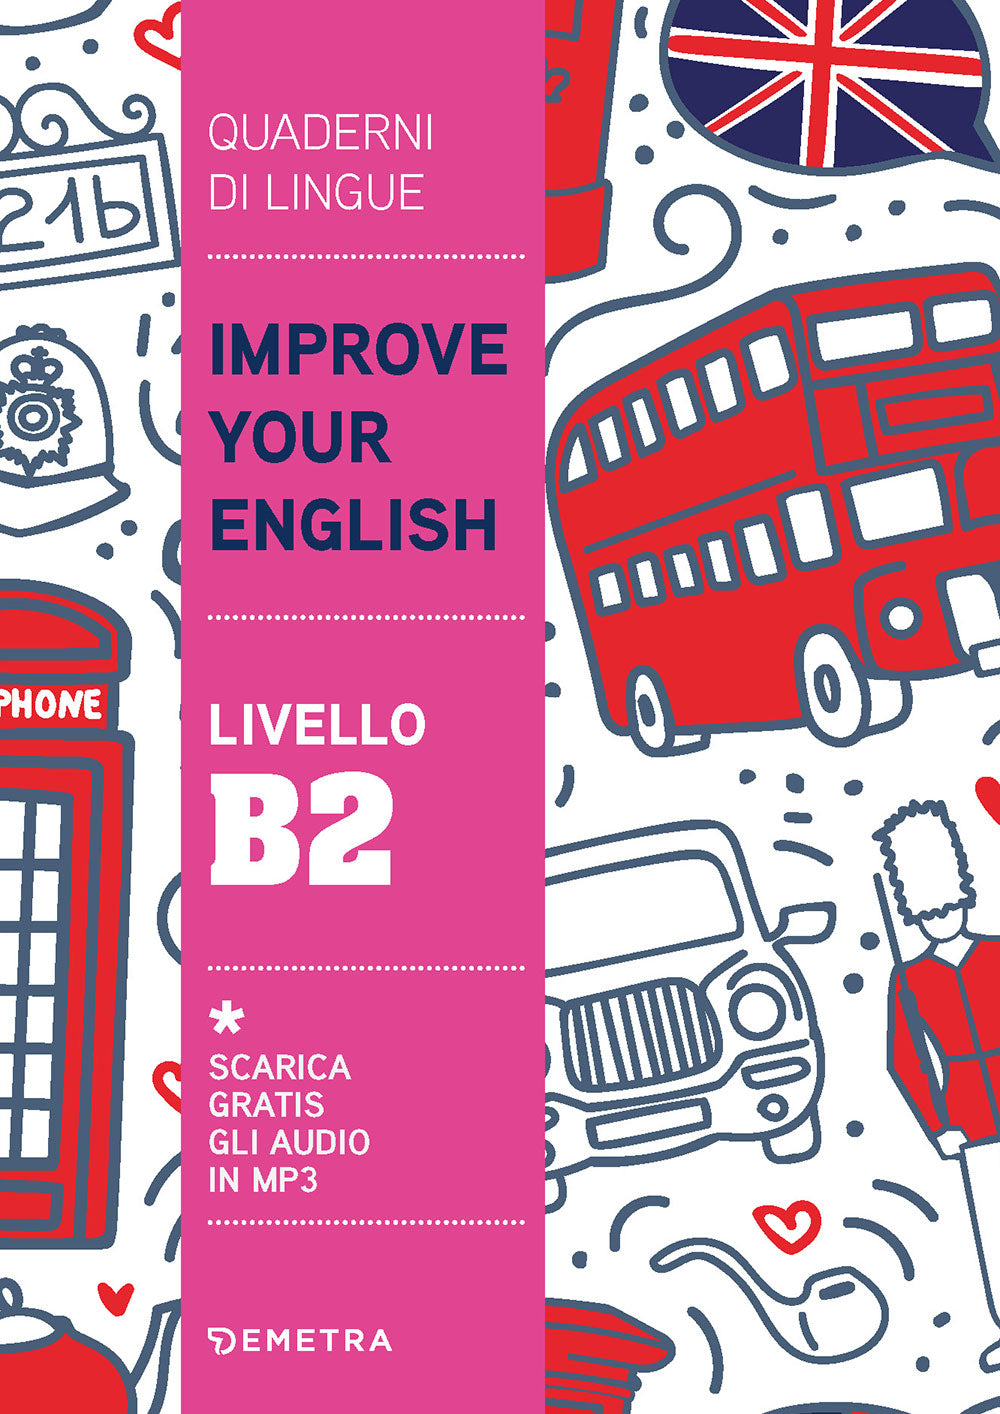 Improve Your English livello B2::scarica gratis gli audio in MP3